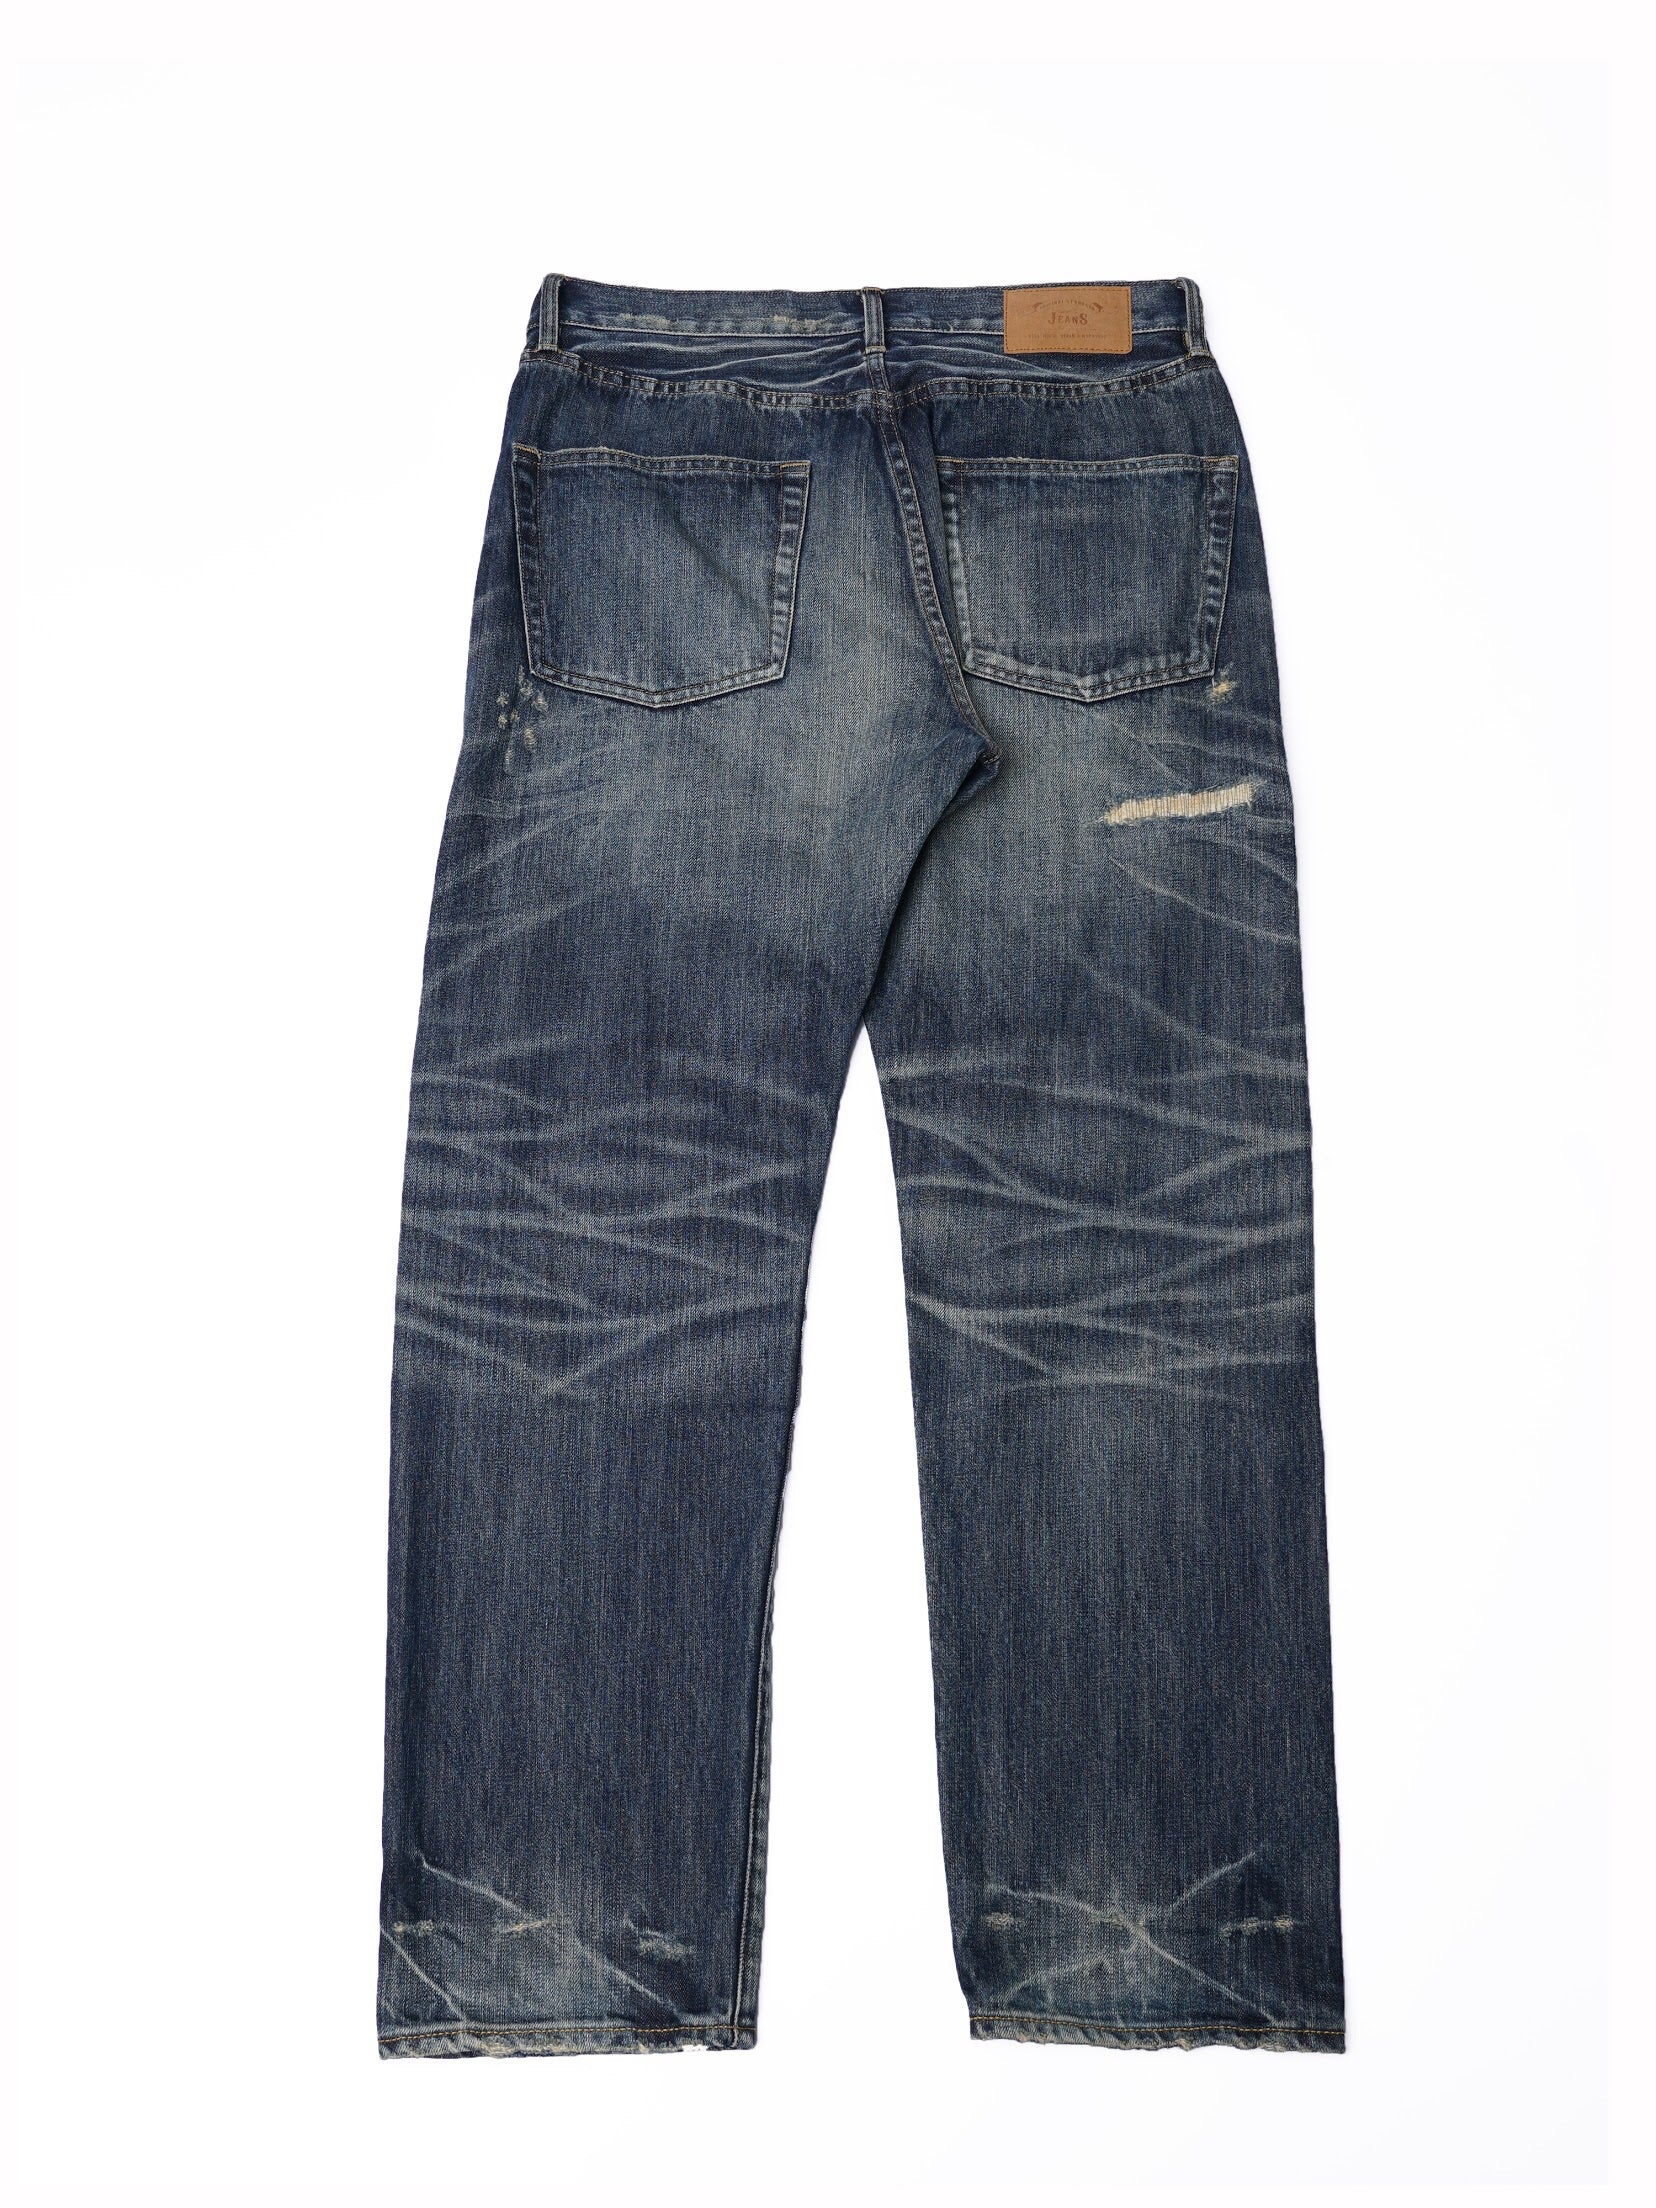 訂製】C02 14oz. Dirty Damaged Slim Cut Jeans – Full House Denim